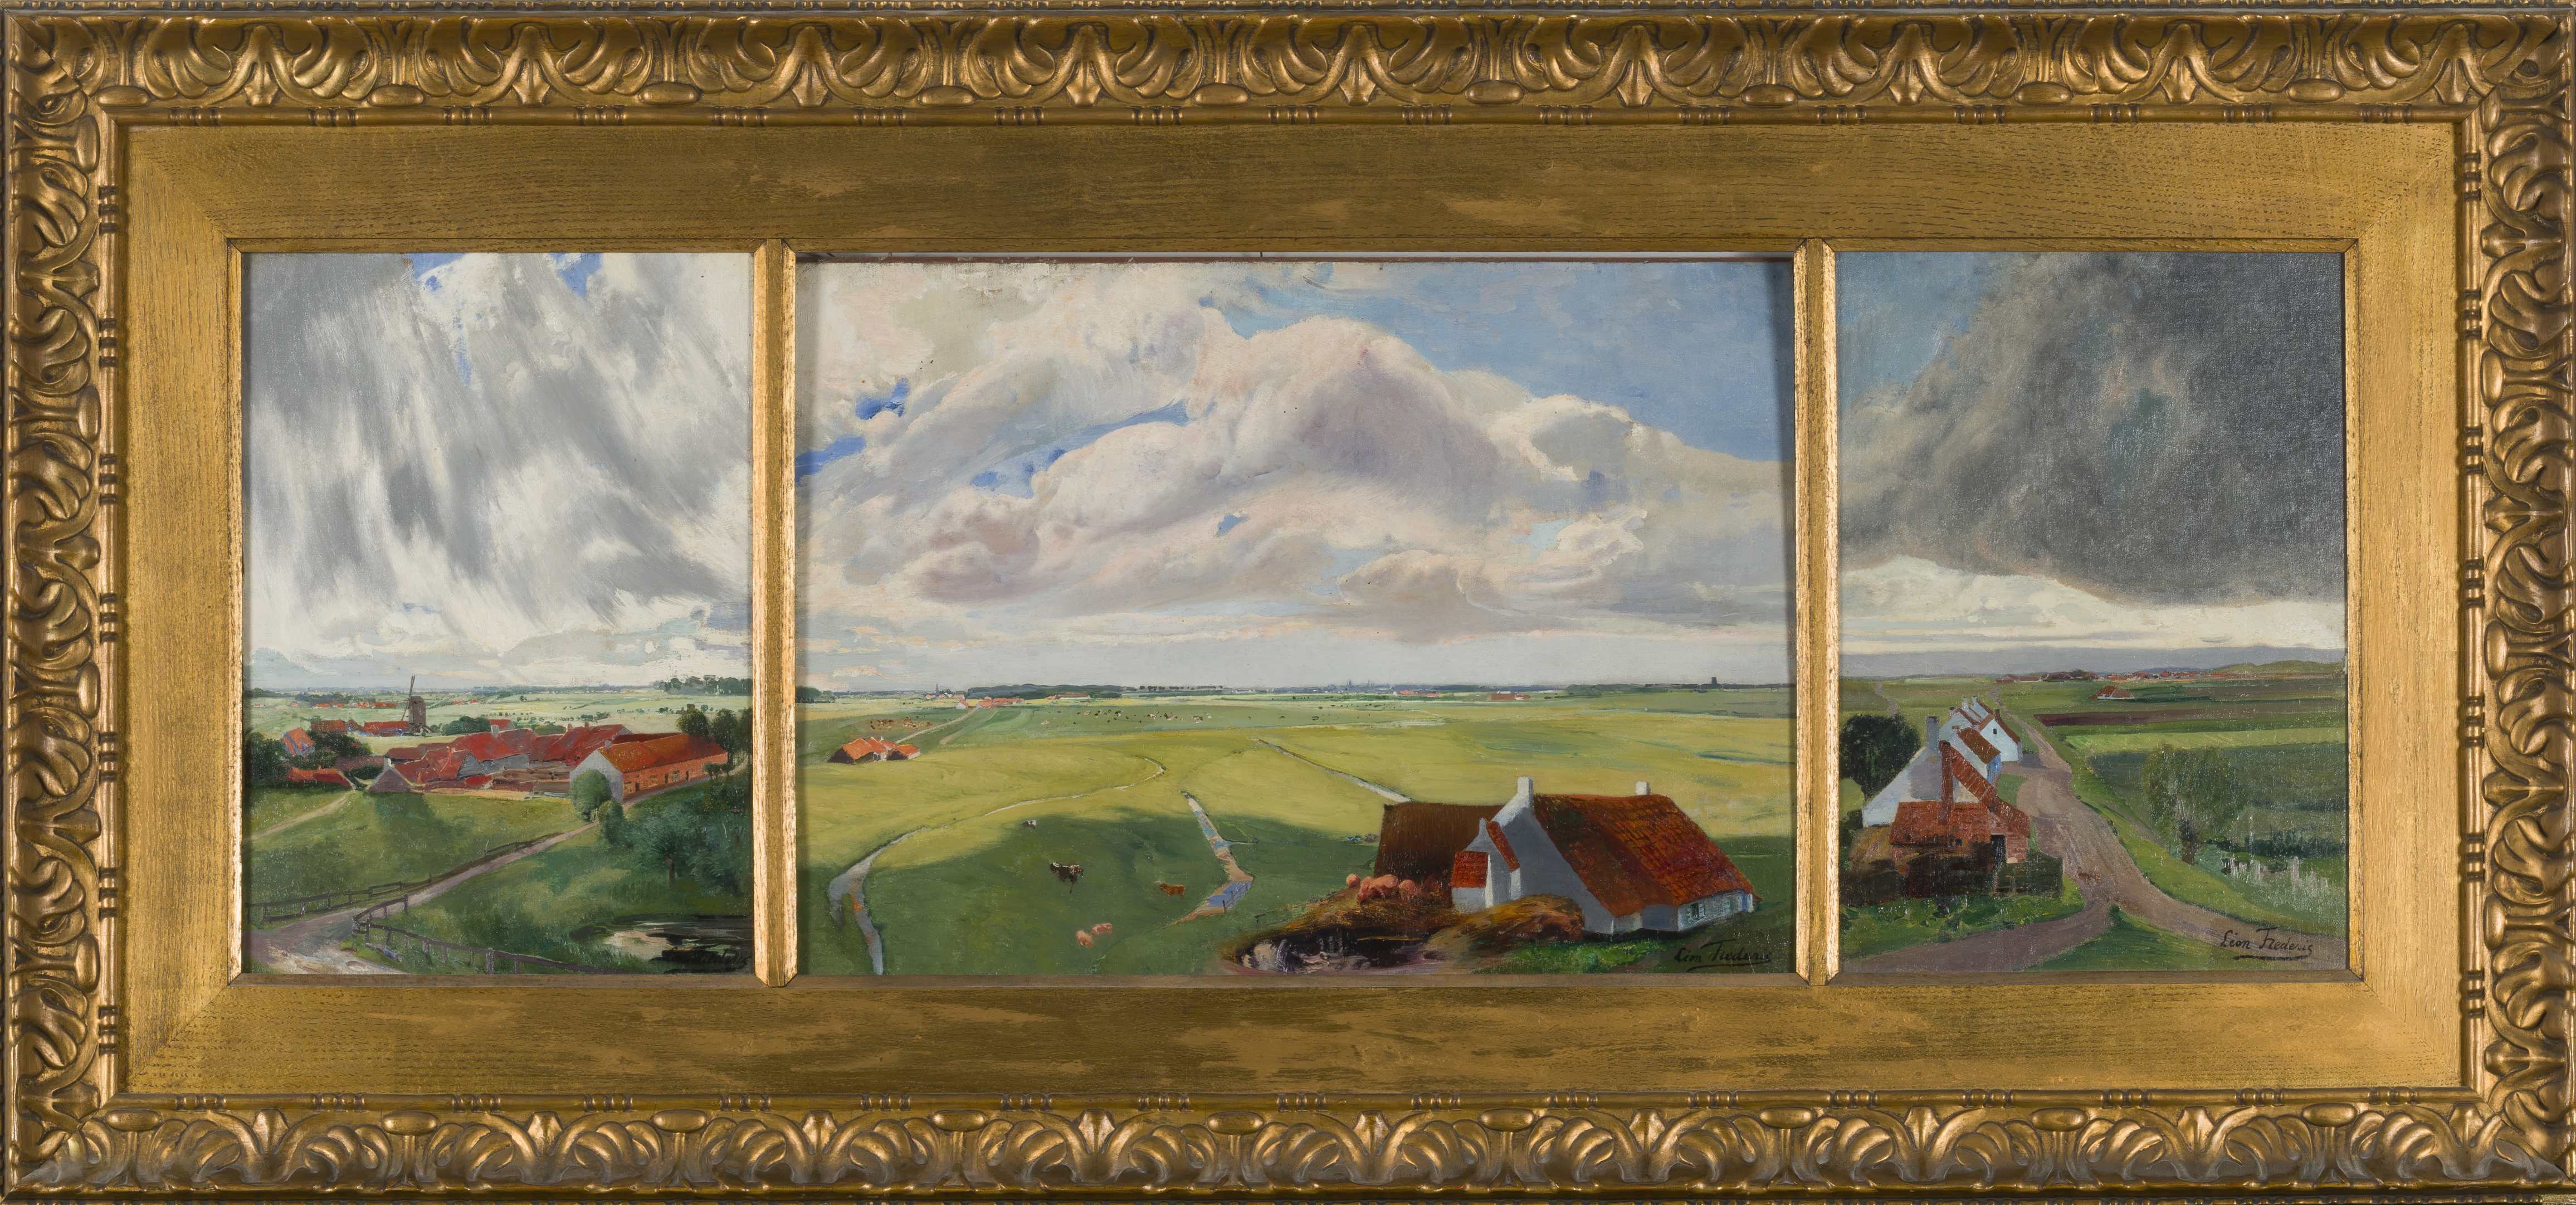 LEON FREDERIC (1856-1940) Paysage de Flandre (Triptyque)